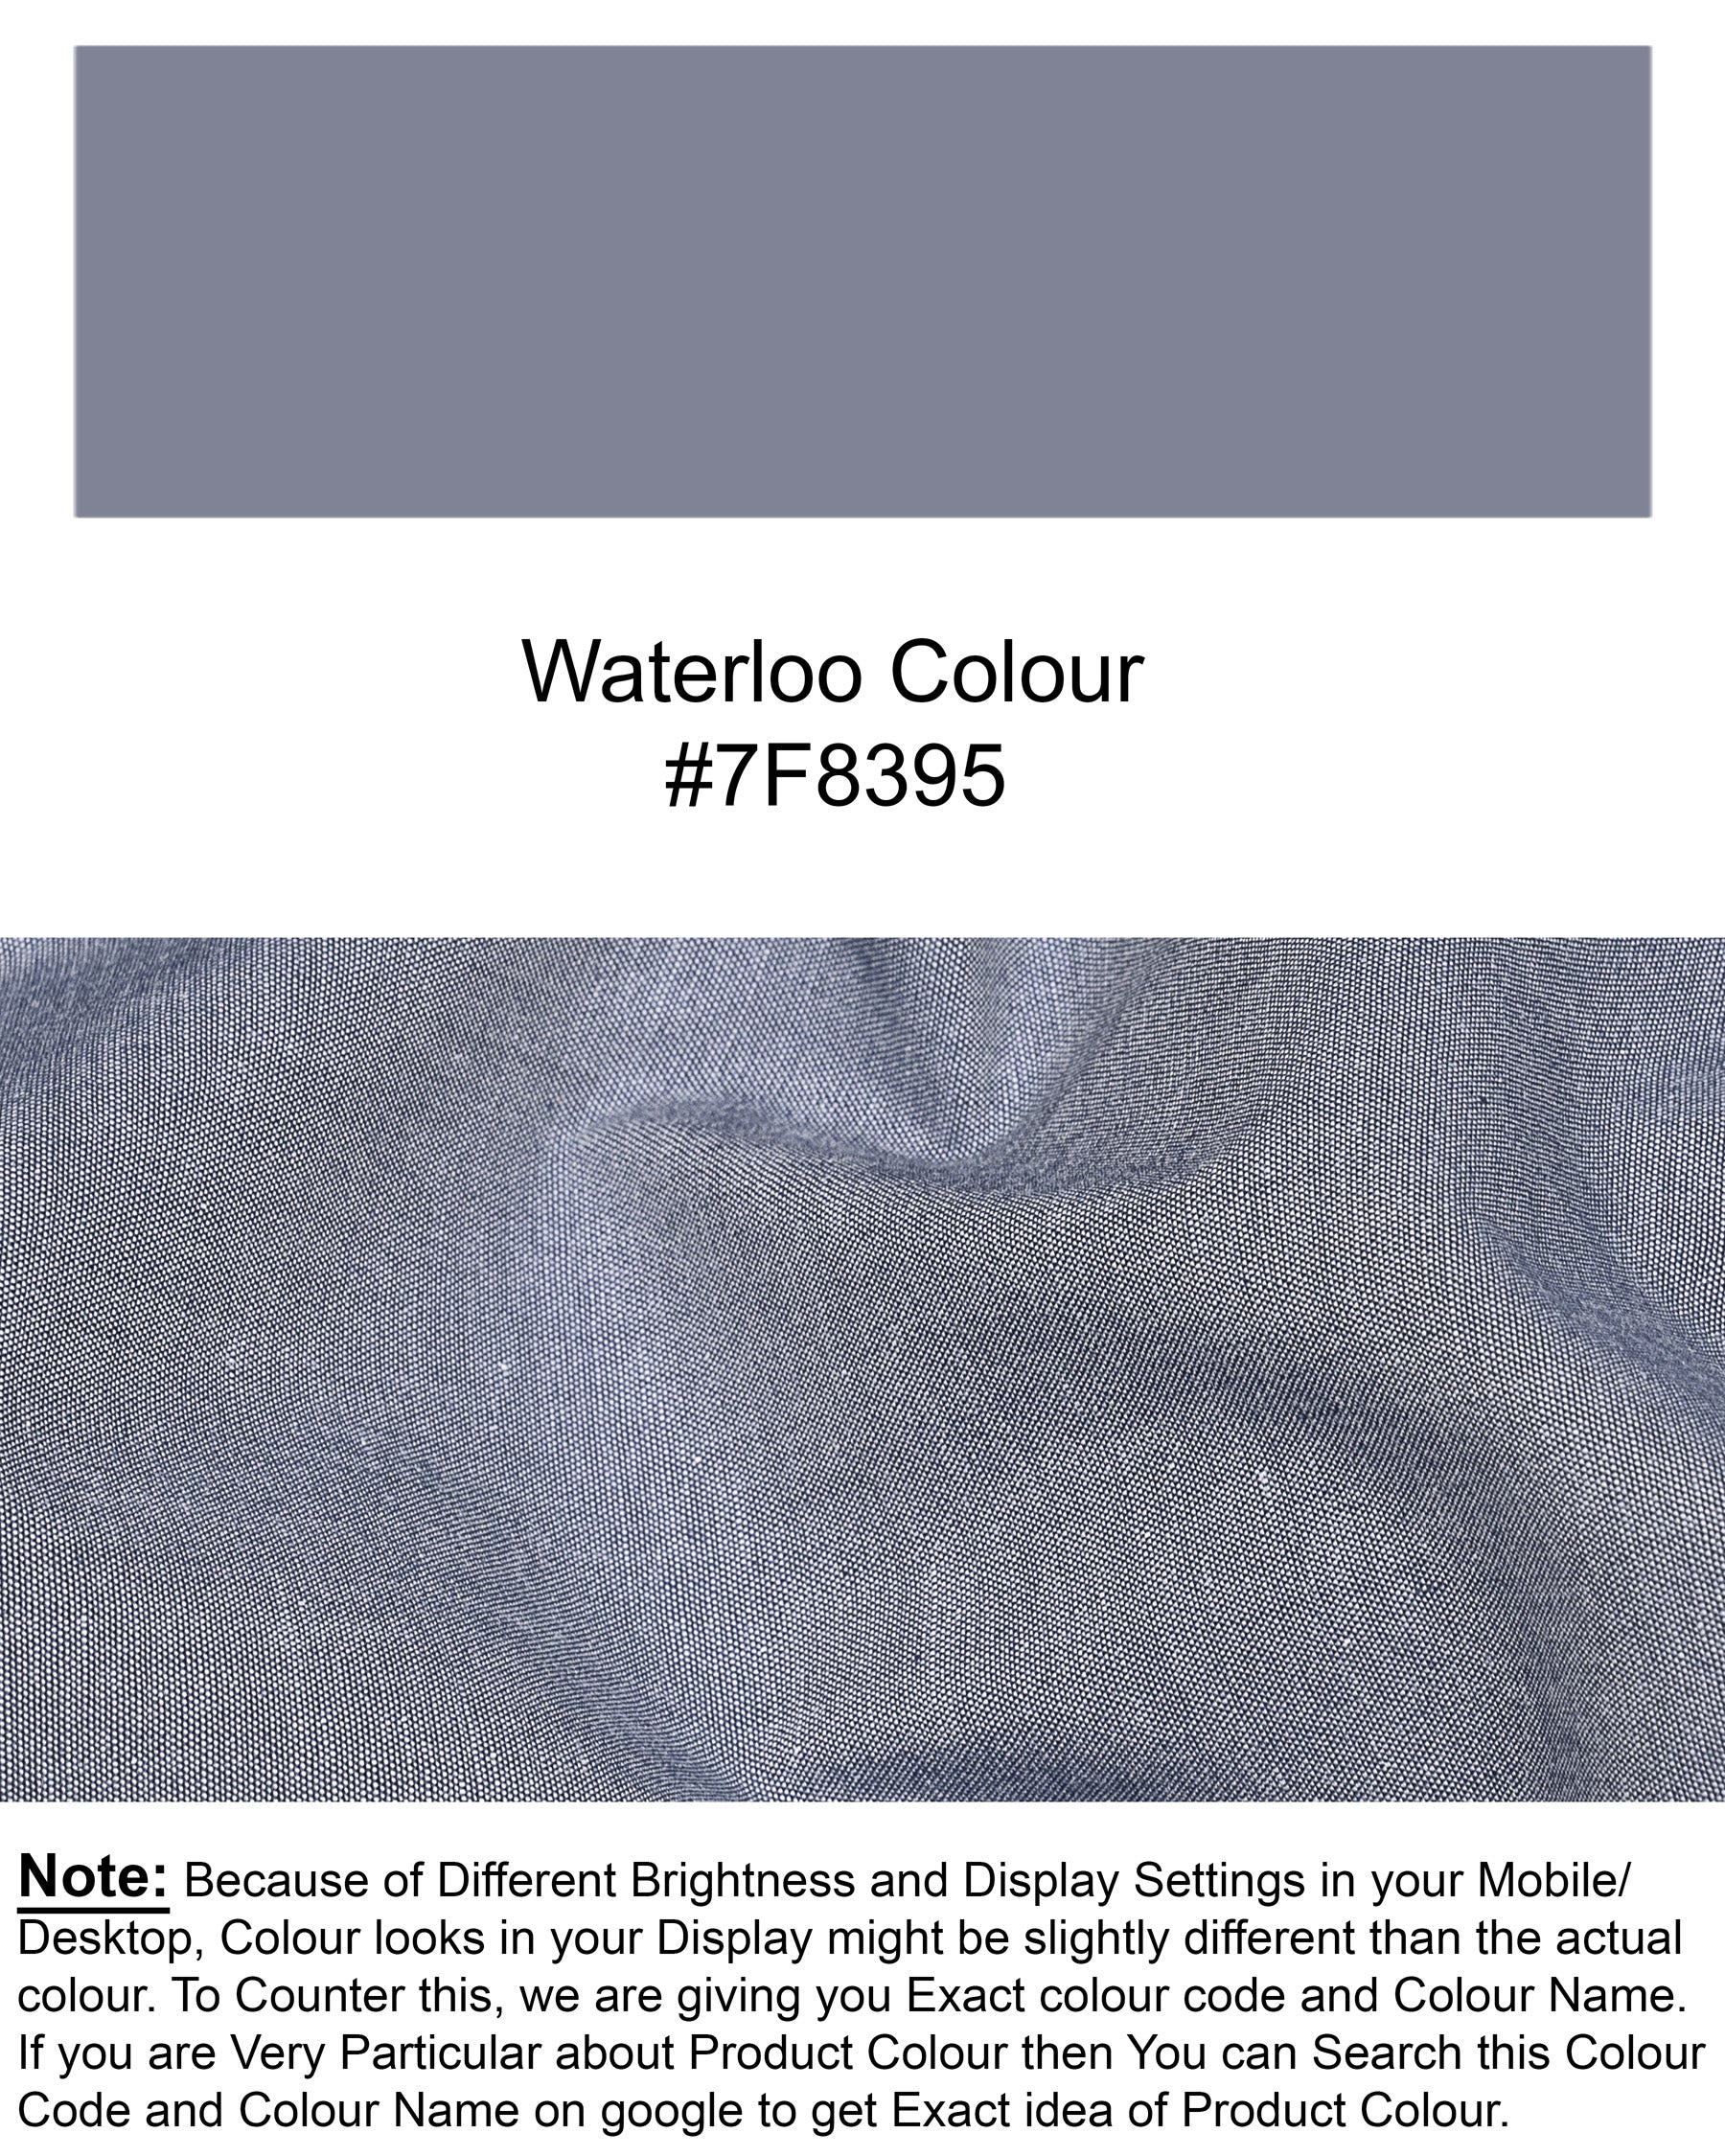 Waterloo Grey Premium Cotton Shirt 4913-M-BLK-38, 4913-M-BLK-H-38, 4913-M-BLK-39, 4913-M-BLK-40, 4913-M-BLK-H-42, 4913-M-BLK-H-44, 4913-M-BLK-H-46, 4913-M-BLK-48, 4913-M-BLK-H-48, 4913-M-BLK-H-52, 4913-M-BLK-H-40, 4913-M-BLK-42, 4913-M-BLK-H-39, 4913-M-BLK-44, 4913-M-BLK-46, 4913-M-BLK-50, 4913-M-BLK-H-50, 4913-M-BLK-52